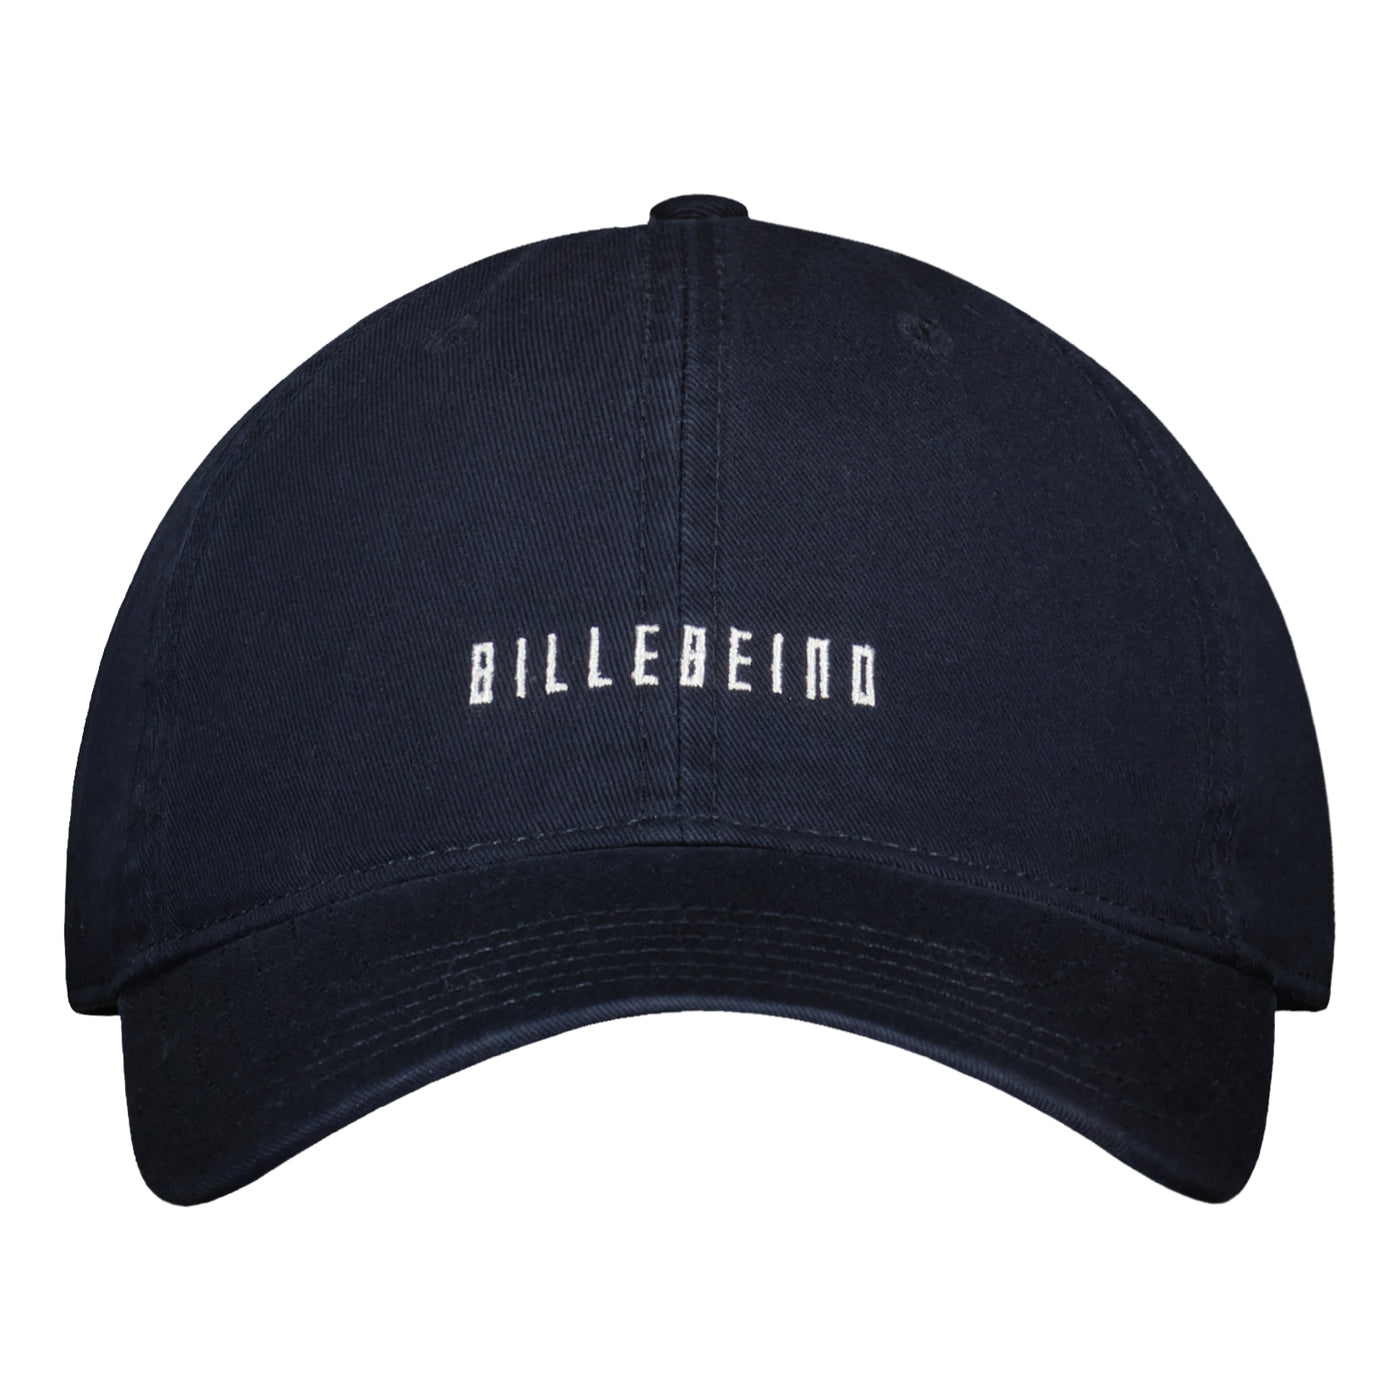 BILLEBEINO DAD CAP Billebeino